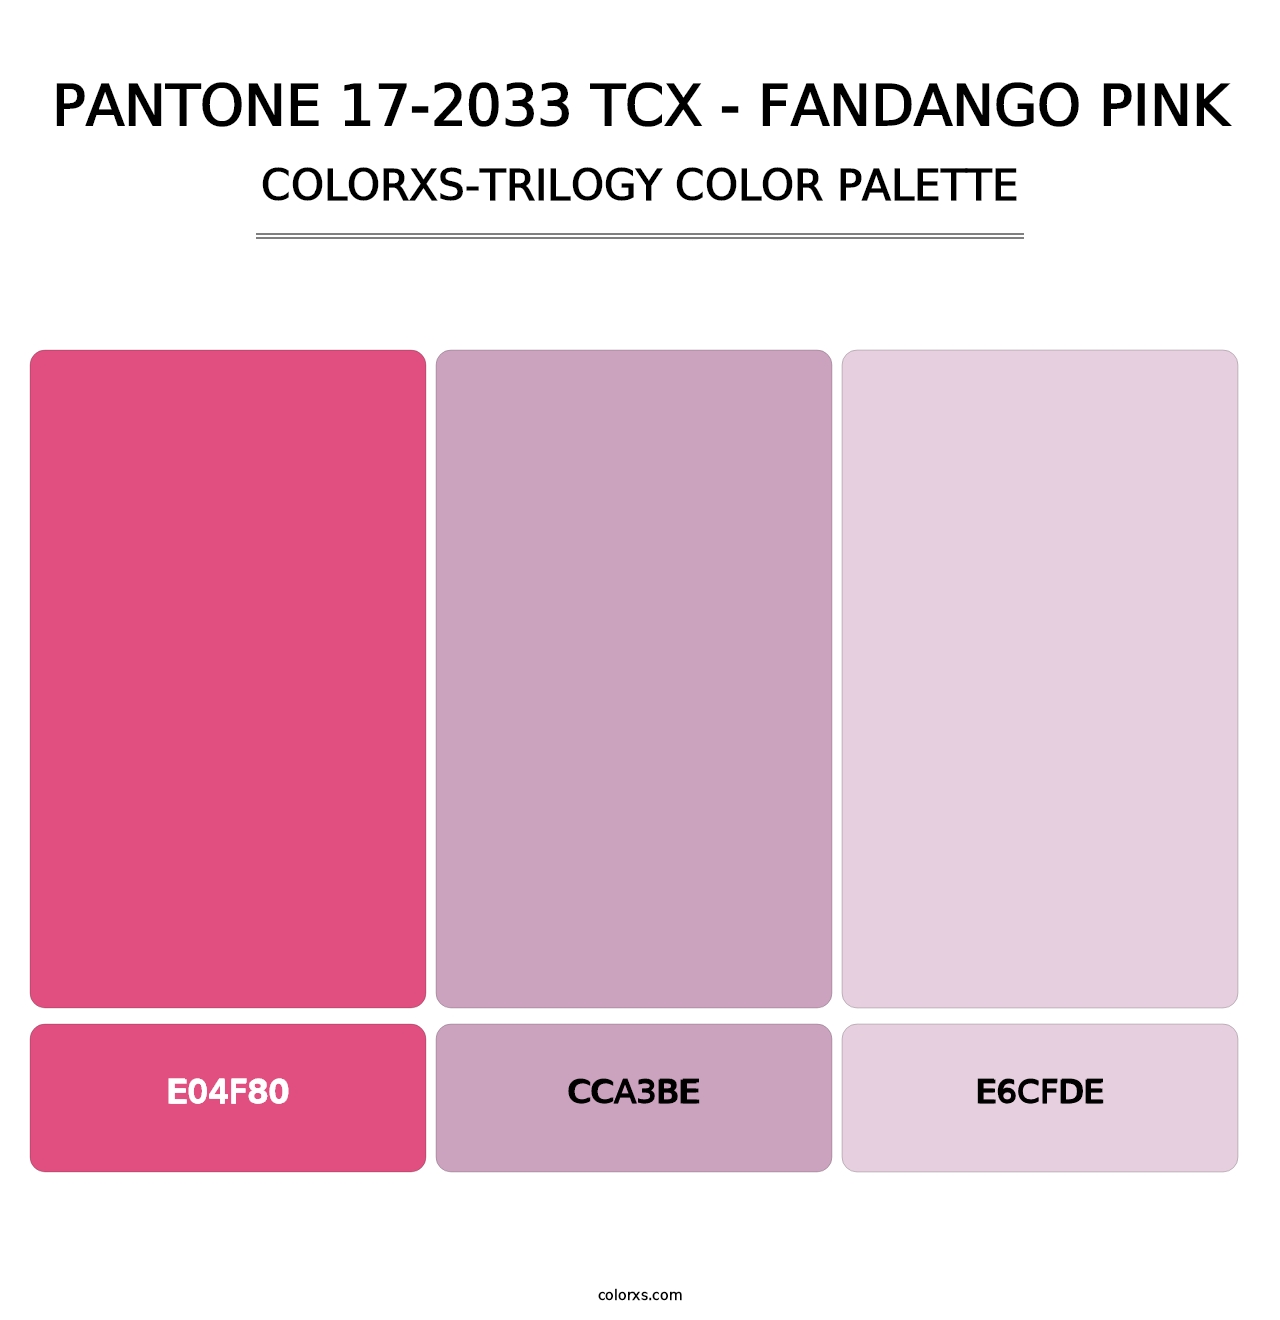 PANTONE 17-2033 TCX - Fandango Pink - Colorxs Trilogy Palette